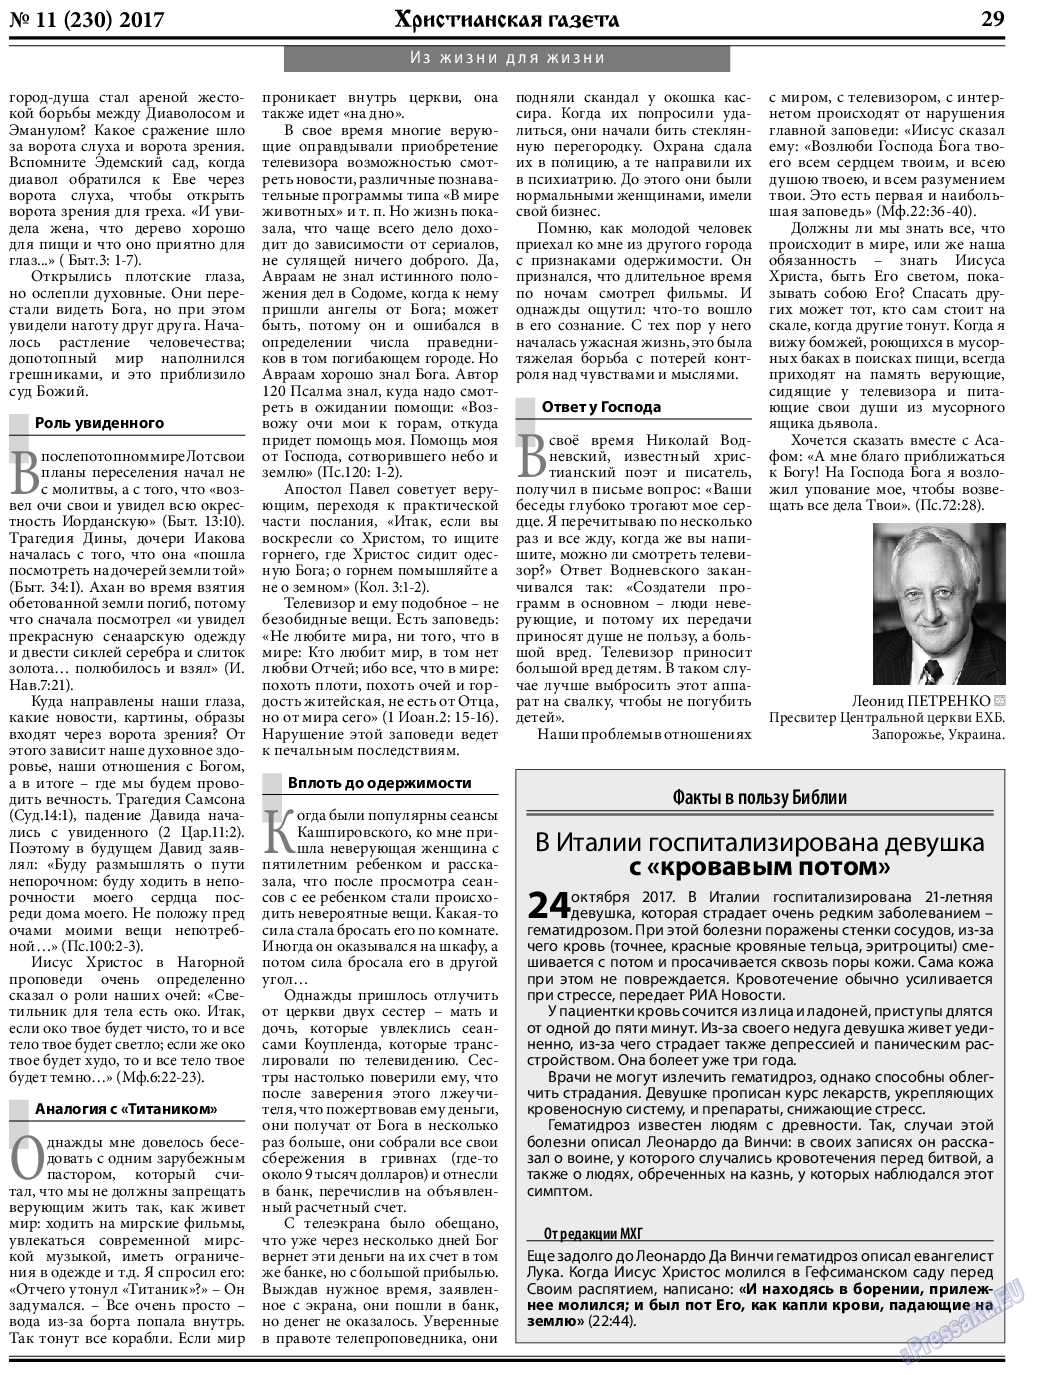 Христианская газета, газета. 2017 №11 стр.29